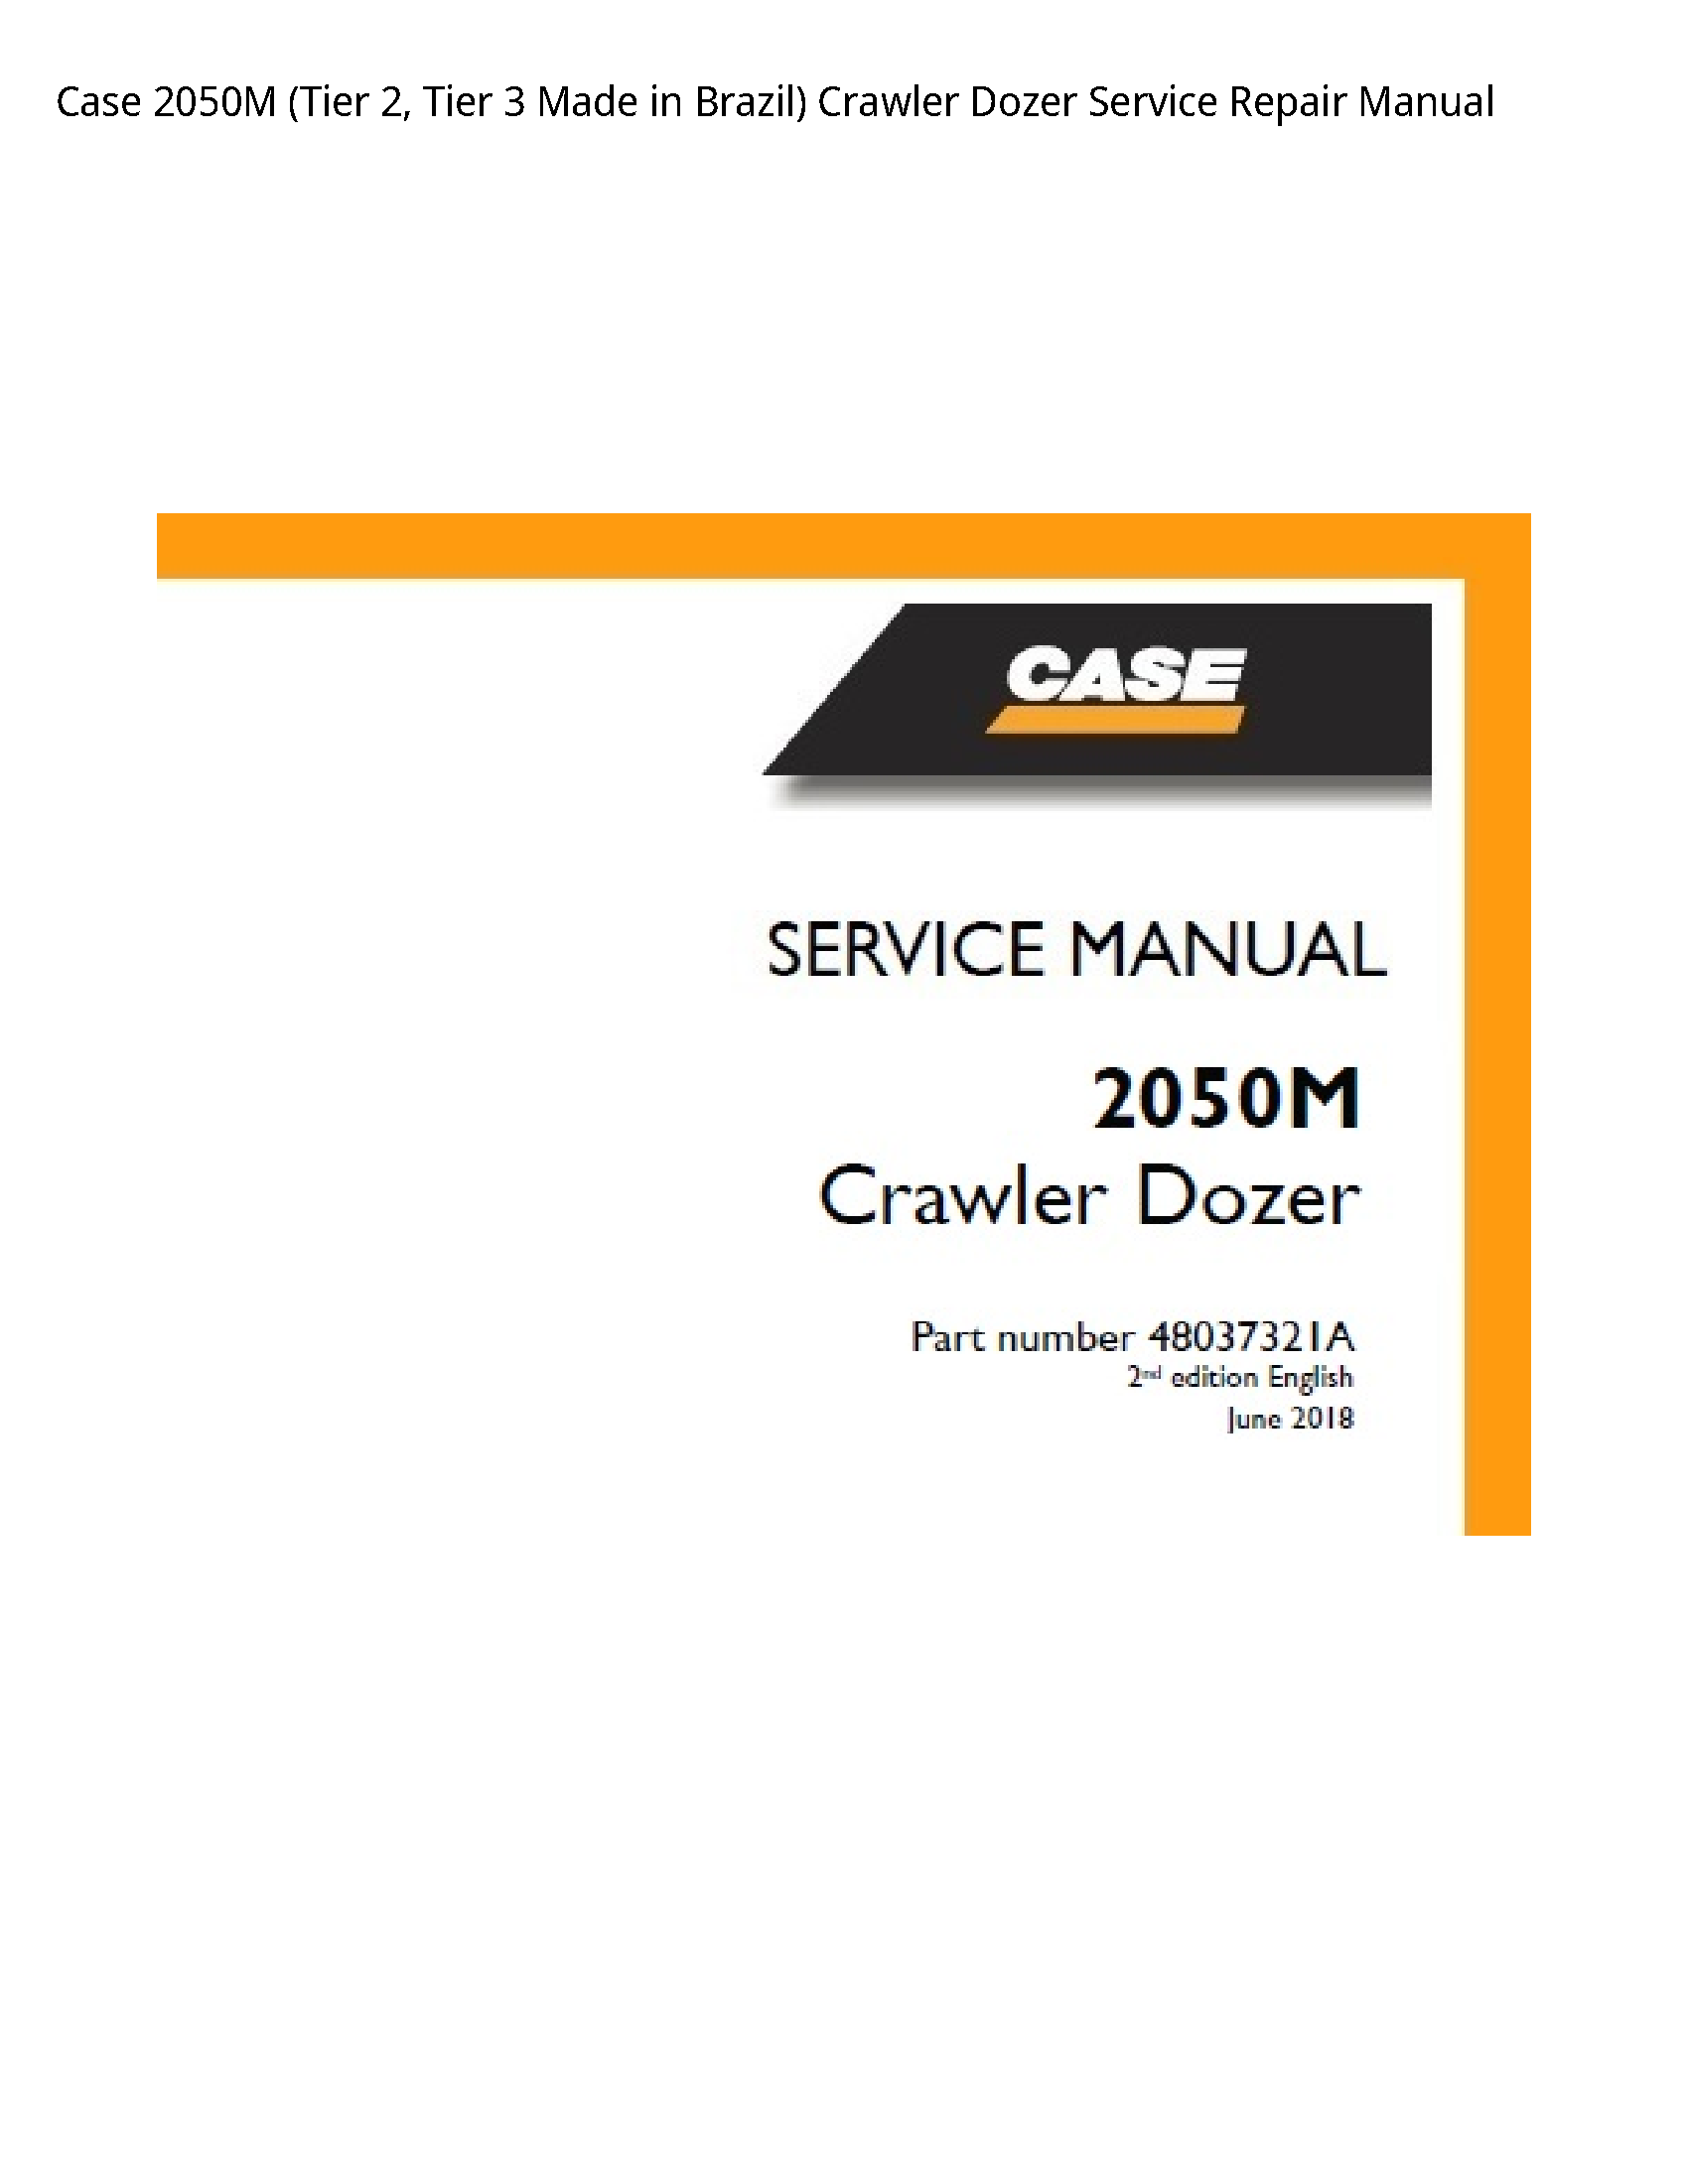 Case/Case IH 2050M (Tier Tier Made in Brazil) Crawler Dozer manual